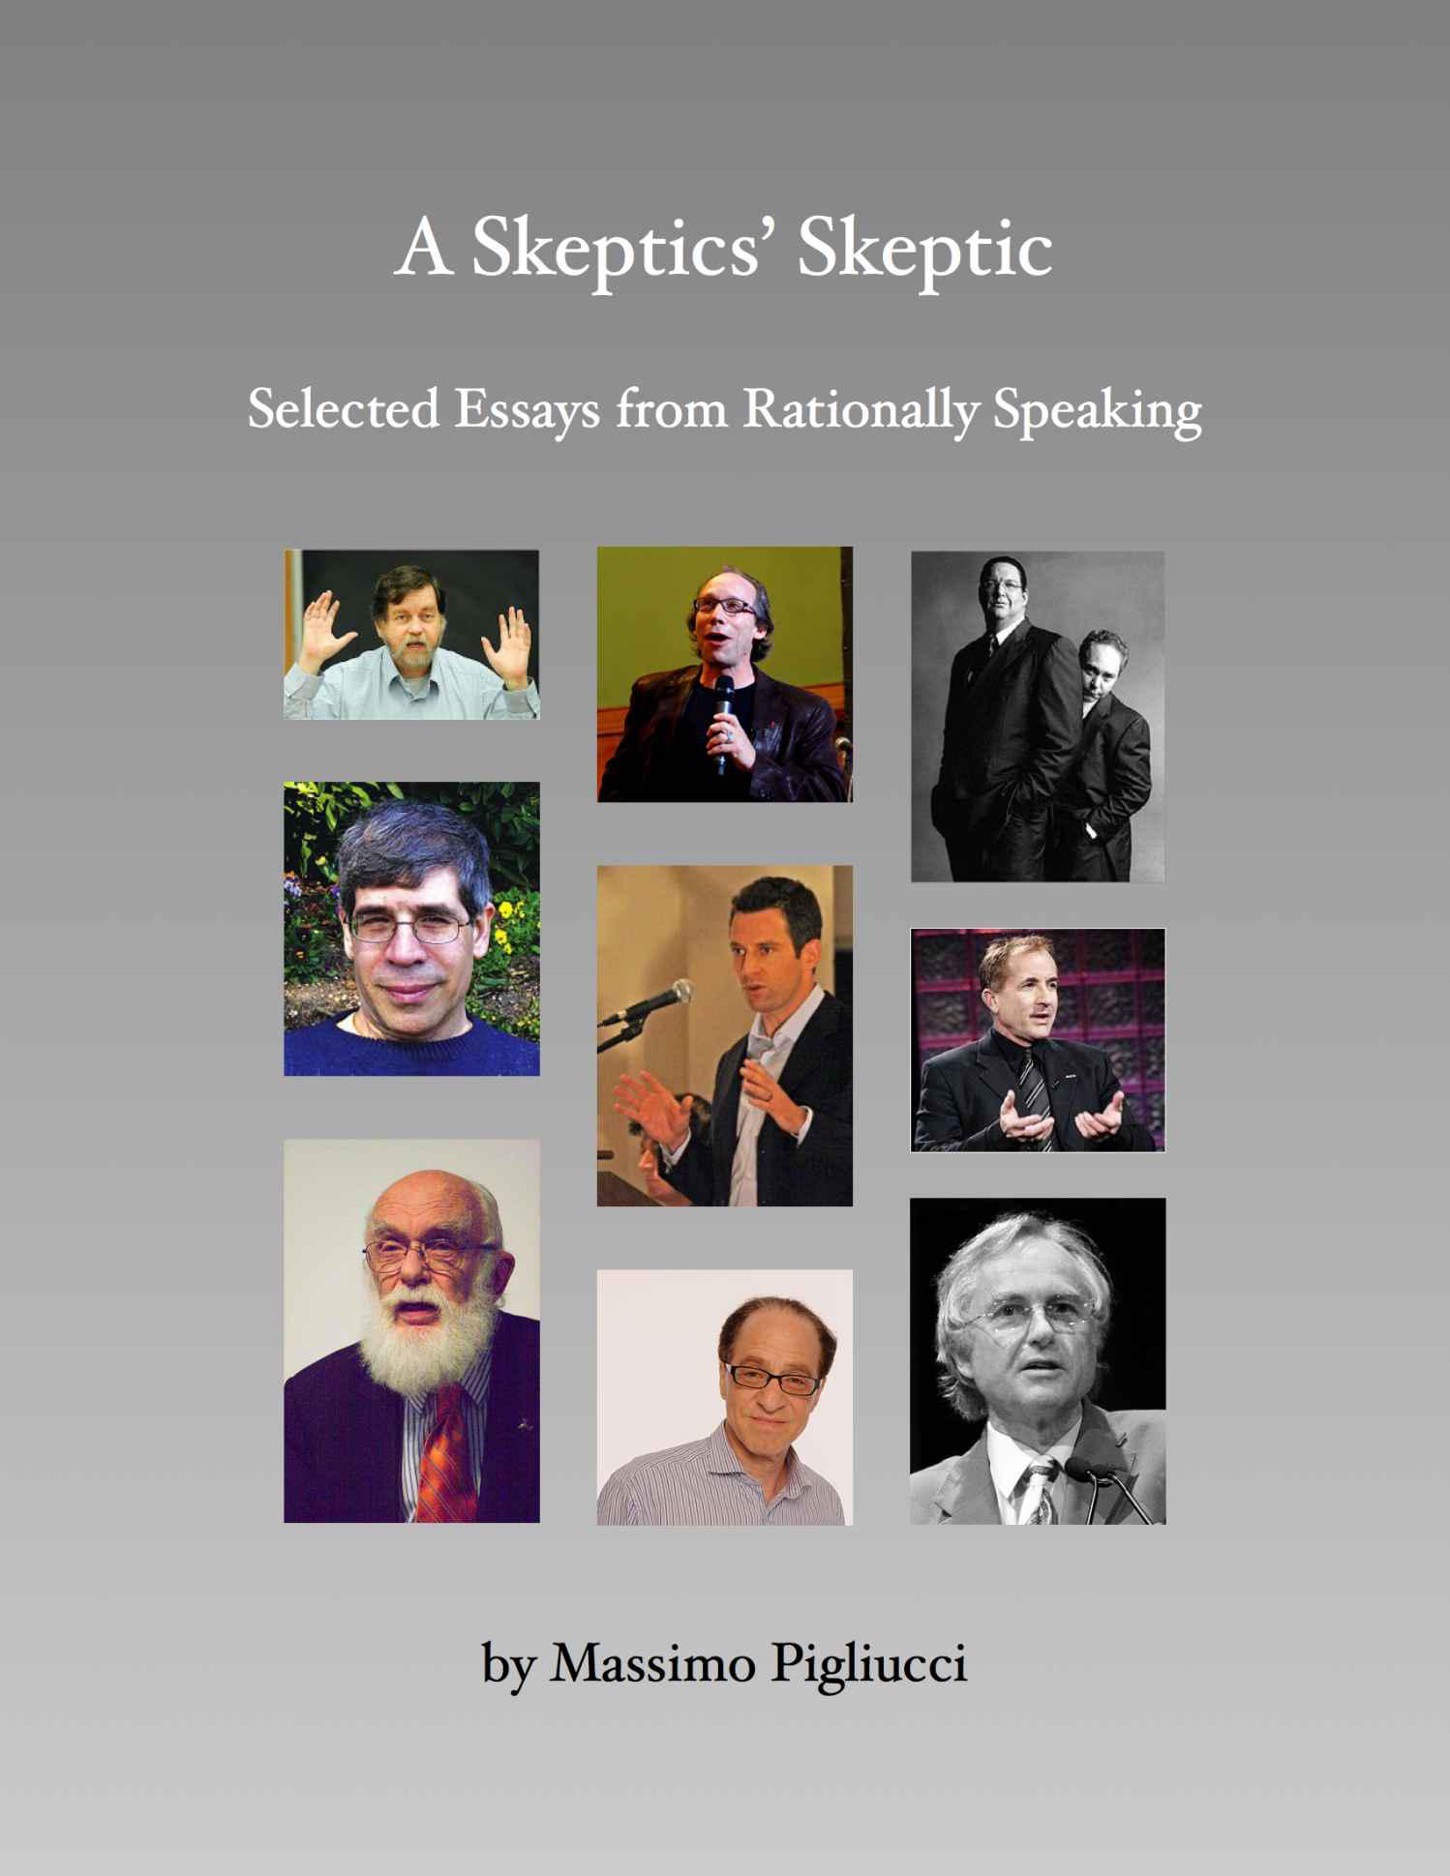 A Skeptics' Skeptic